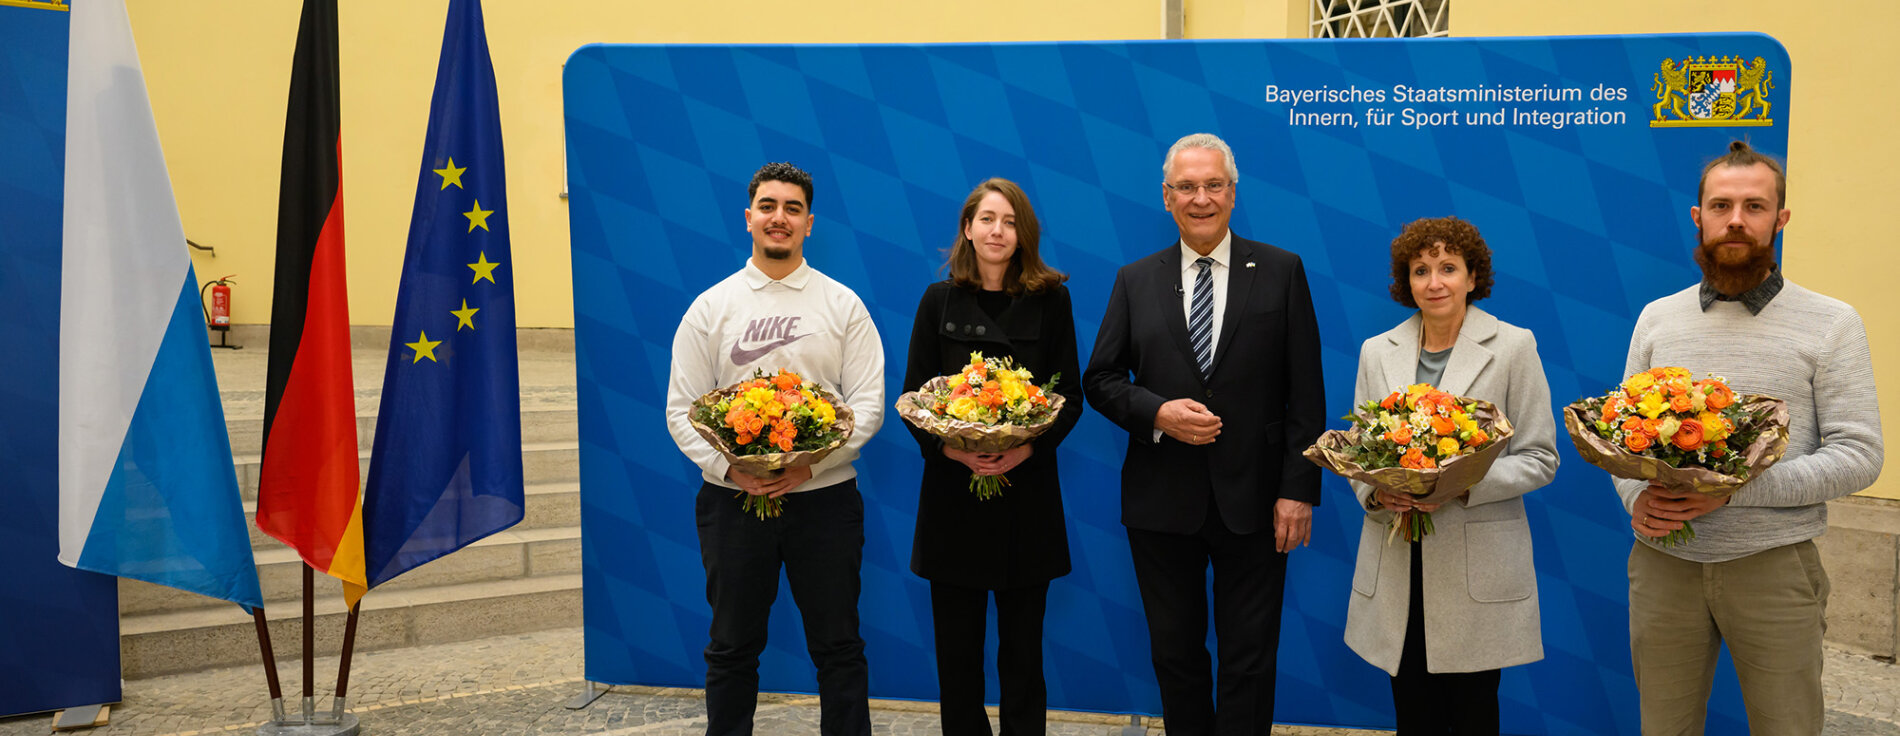 Gruppenfoto mit Innenminister Joachim Herrmann und den vier Eingebürgerten mit Blumensträußen